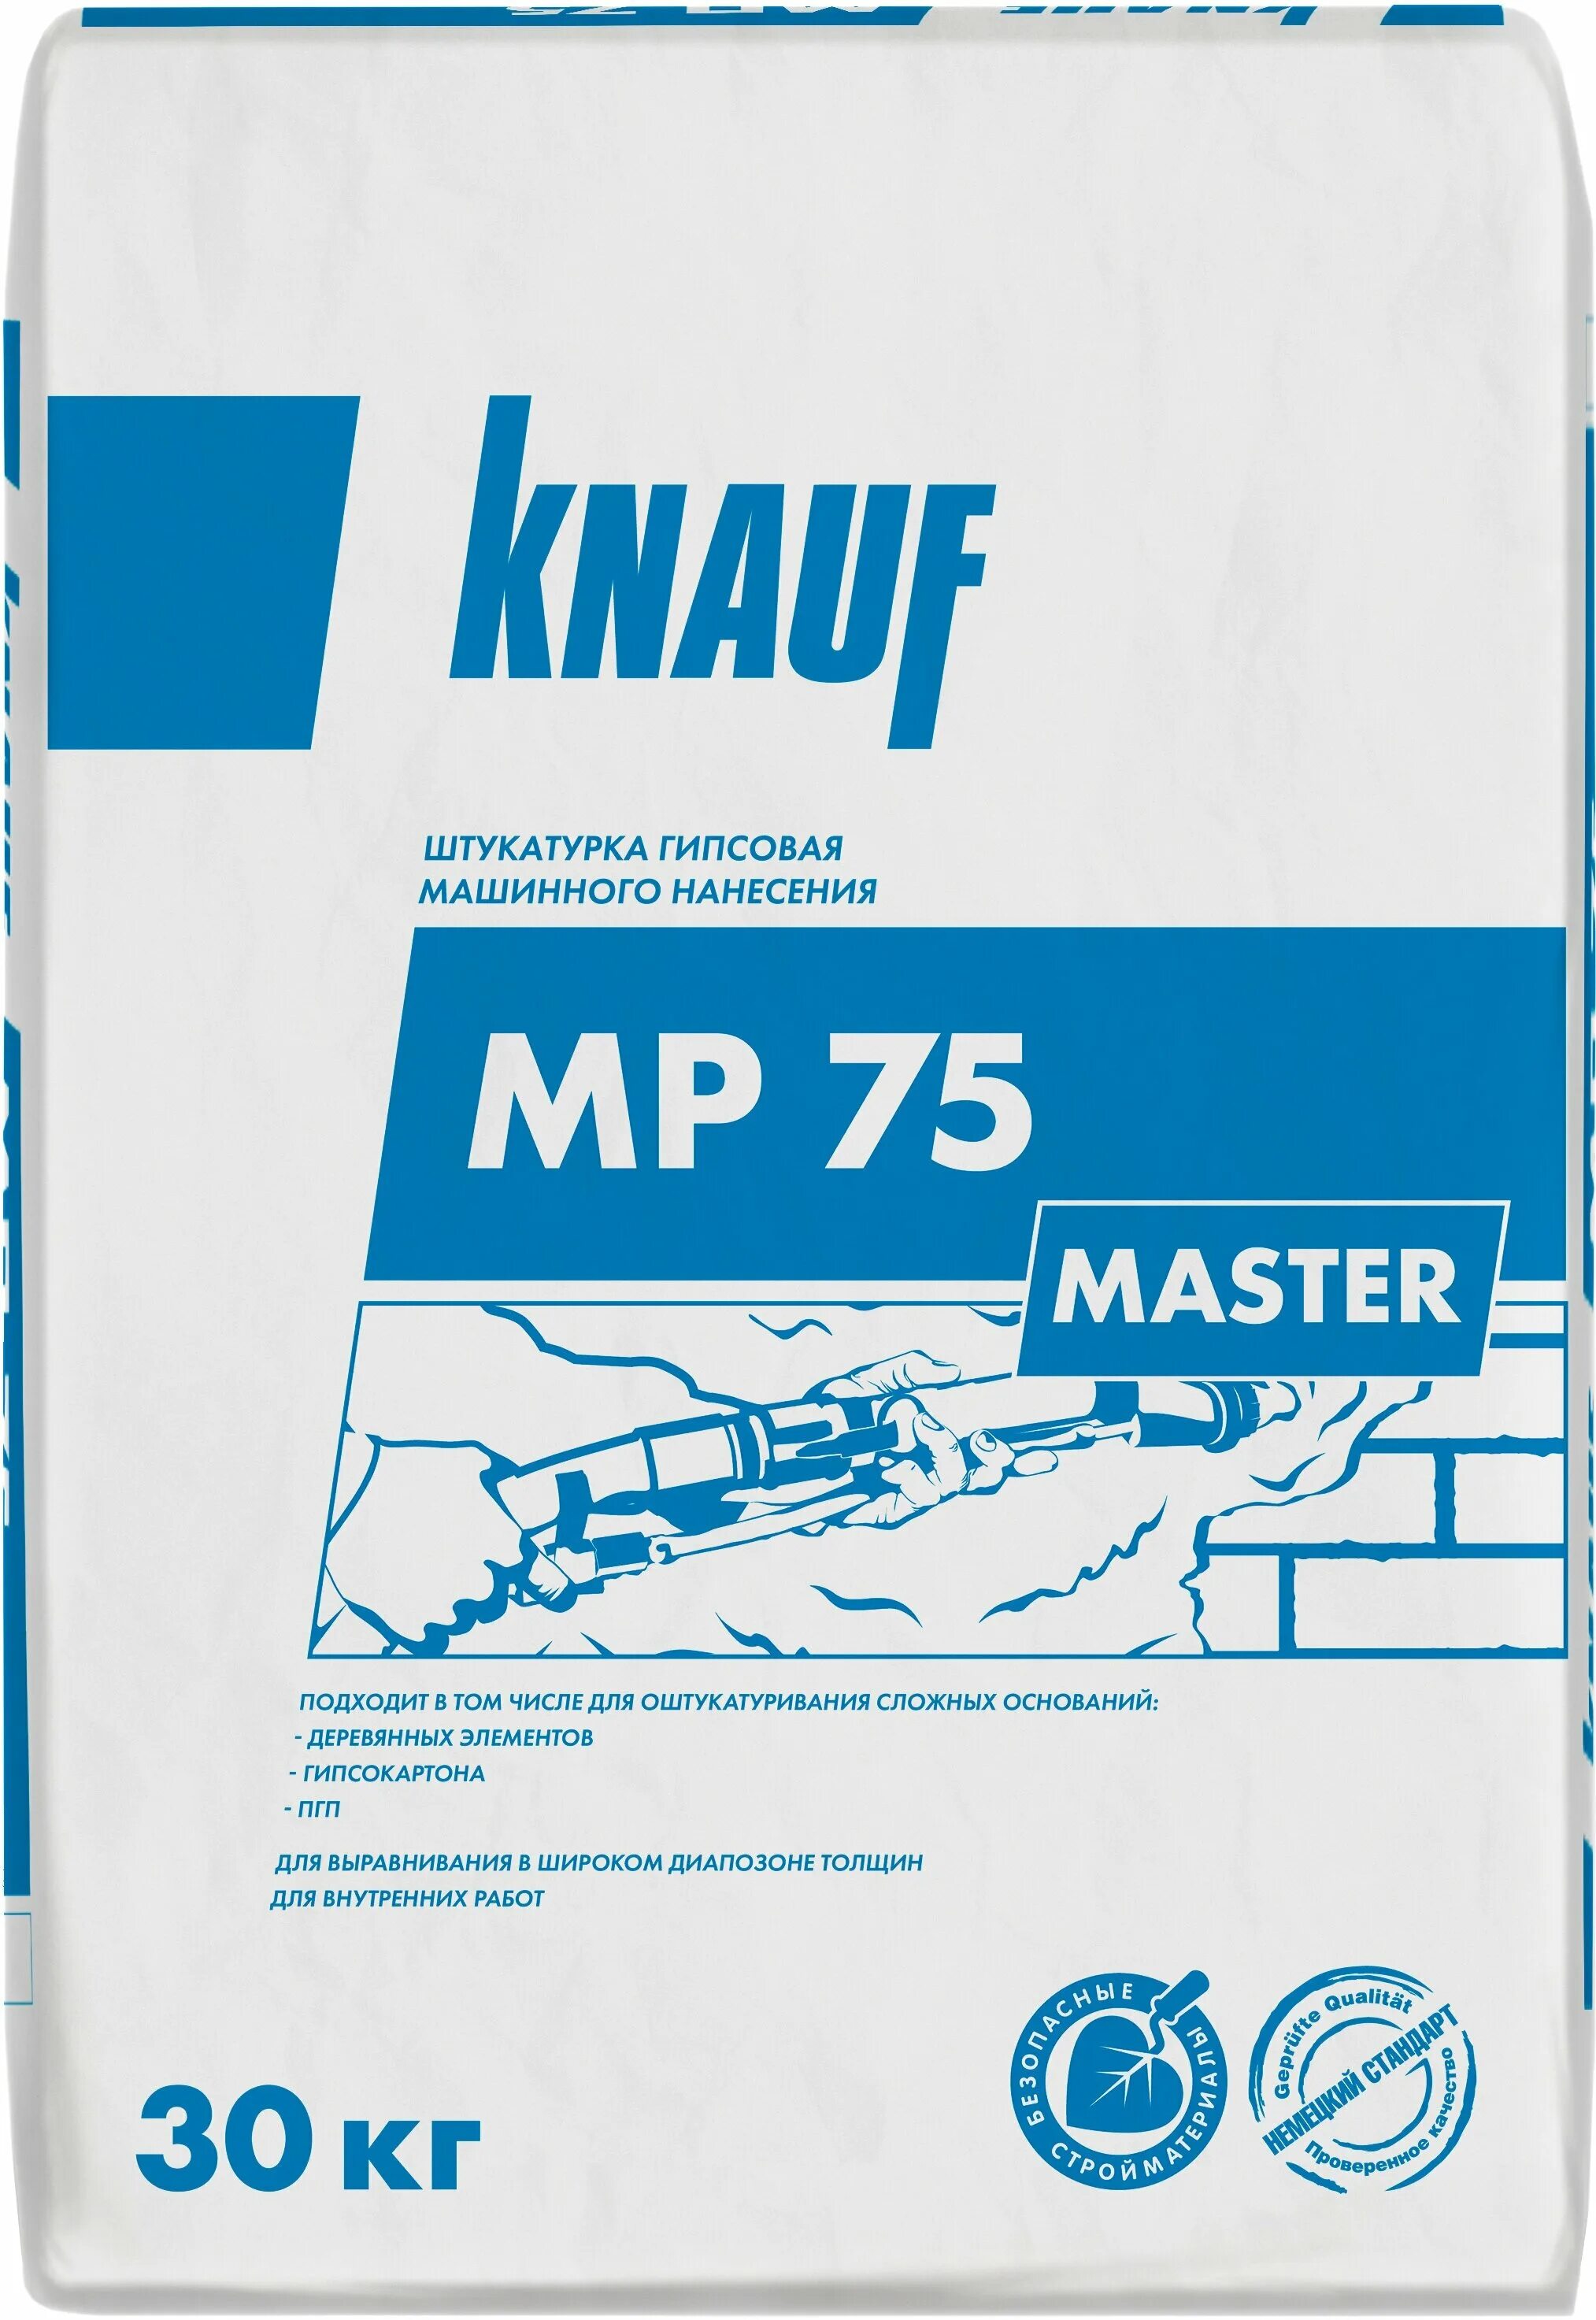 Кнауф 75 купить. Штукатурка гипсовая Knauf МП-75. МП-75 Кнауф штукатурка. Штукатурка механизированная гипсовая Knauf МП 75 мастер 30 кг. Штукатурка гипсовая Кнауф МП 75 30 кг.